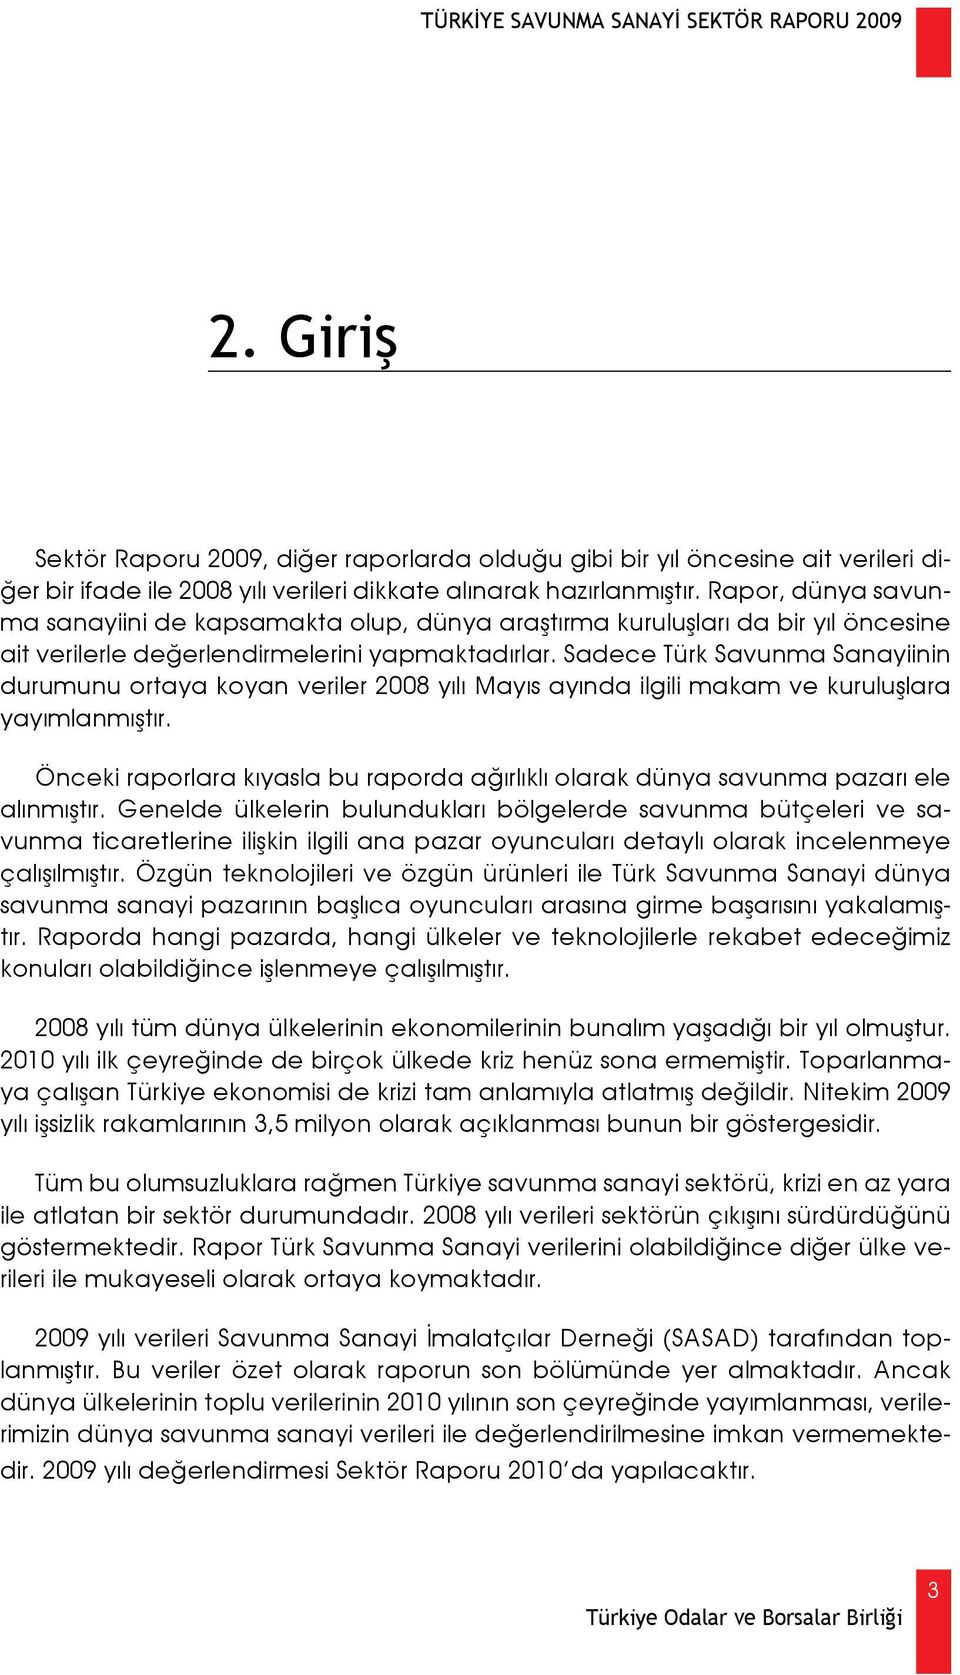 Sadece Türk Savunma Sanayiinin durumunu ortaya koyan veriler 2008 yılı Mayıs ayında ilgili makam ve kuruluşlara yayımlanmıştır.